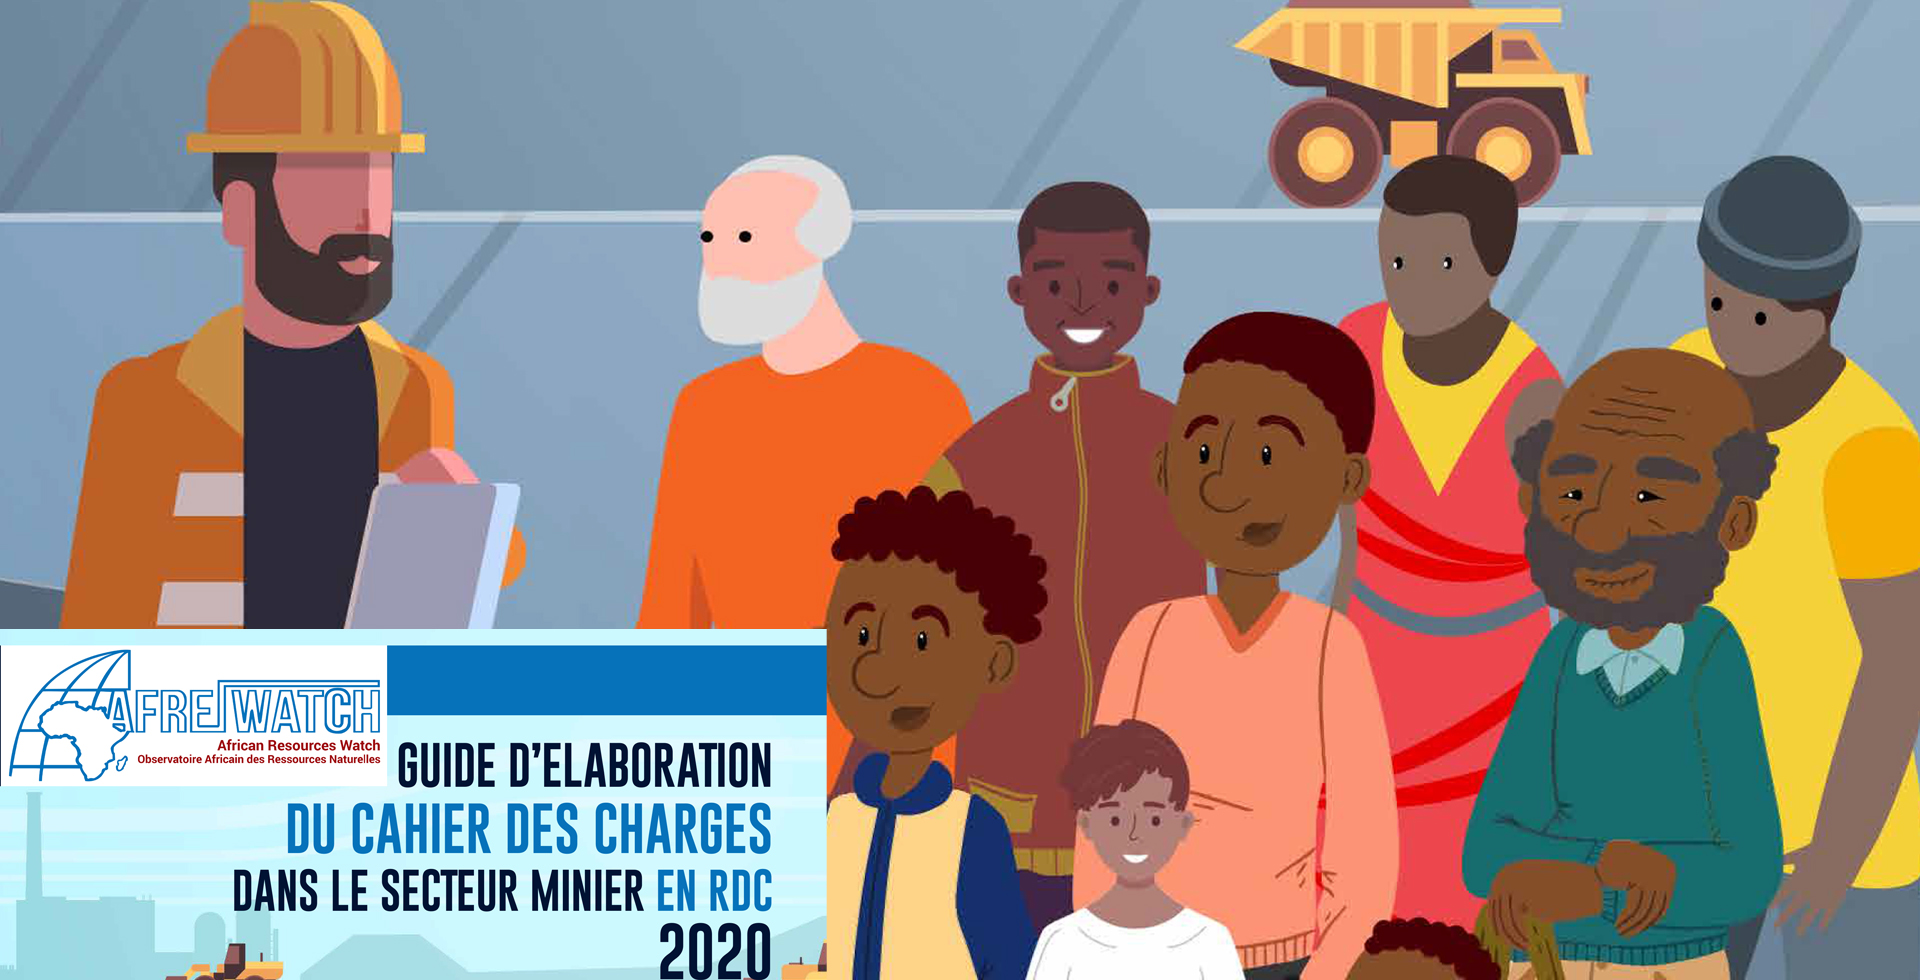 Guide d’Elaboration du Cahier des charges dans le secteur minier en RDC